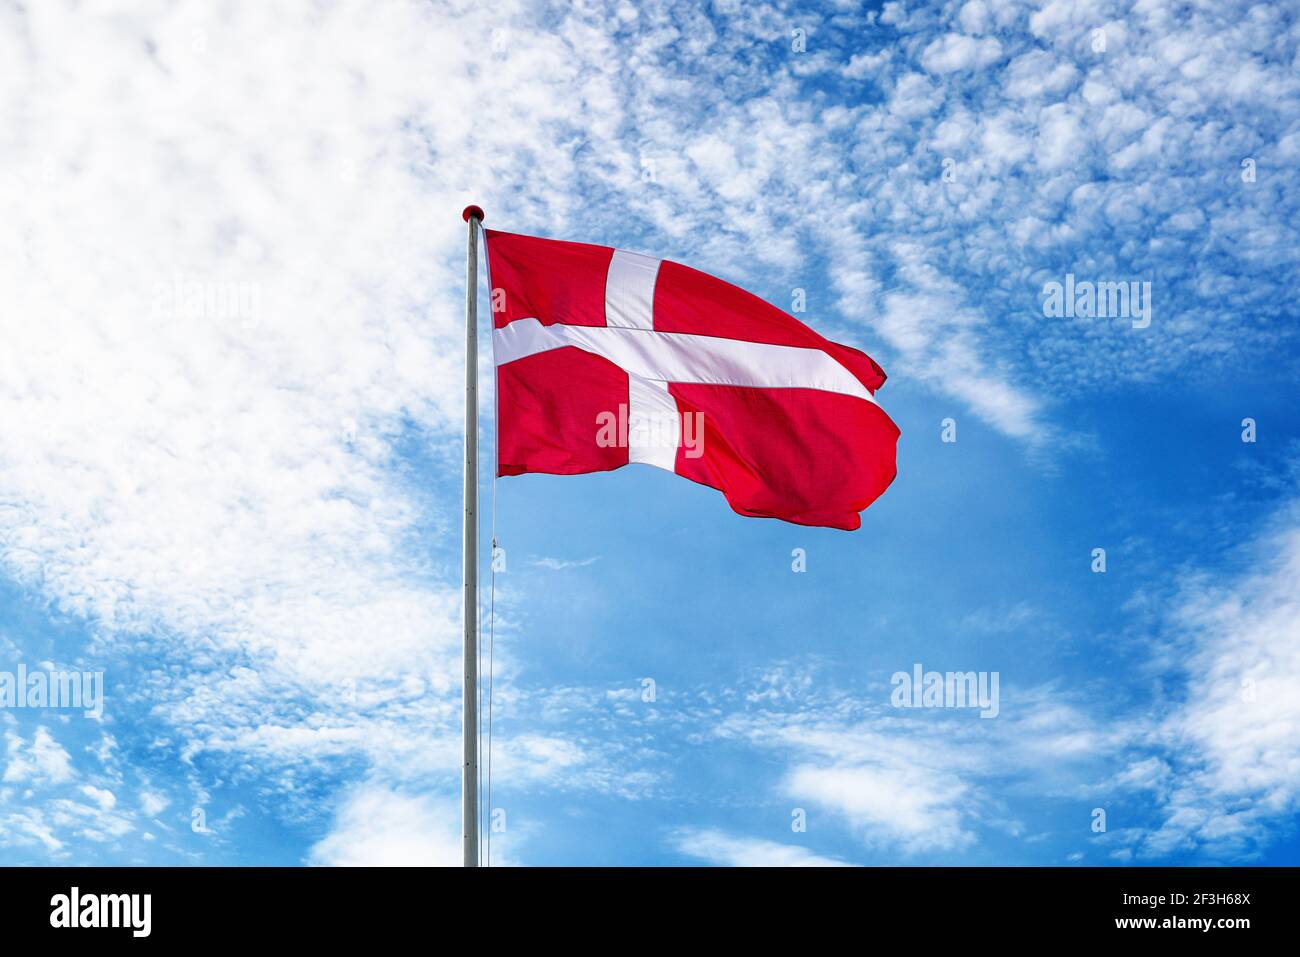 Dänische Flagge am blauen Himmel. Flagge Dänemarks winkt im Wind. Helles und buntes Konzept für Reisen und Tourismus. Stockfoto